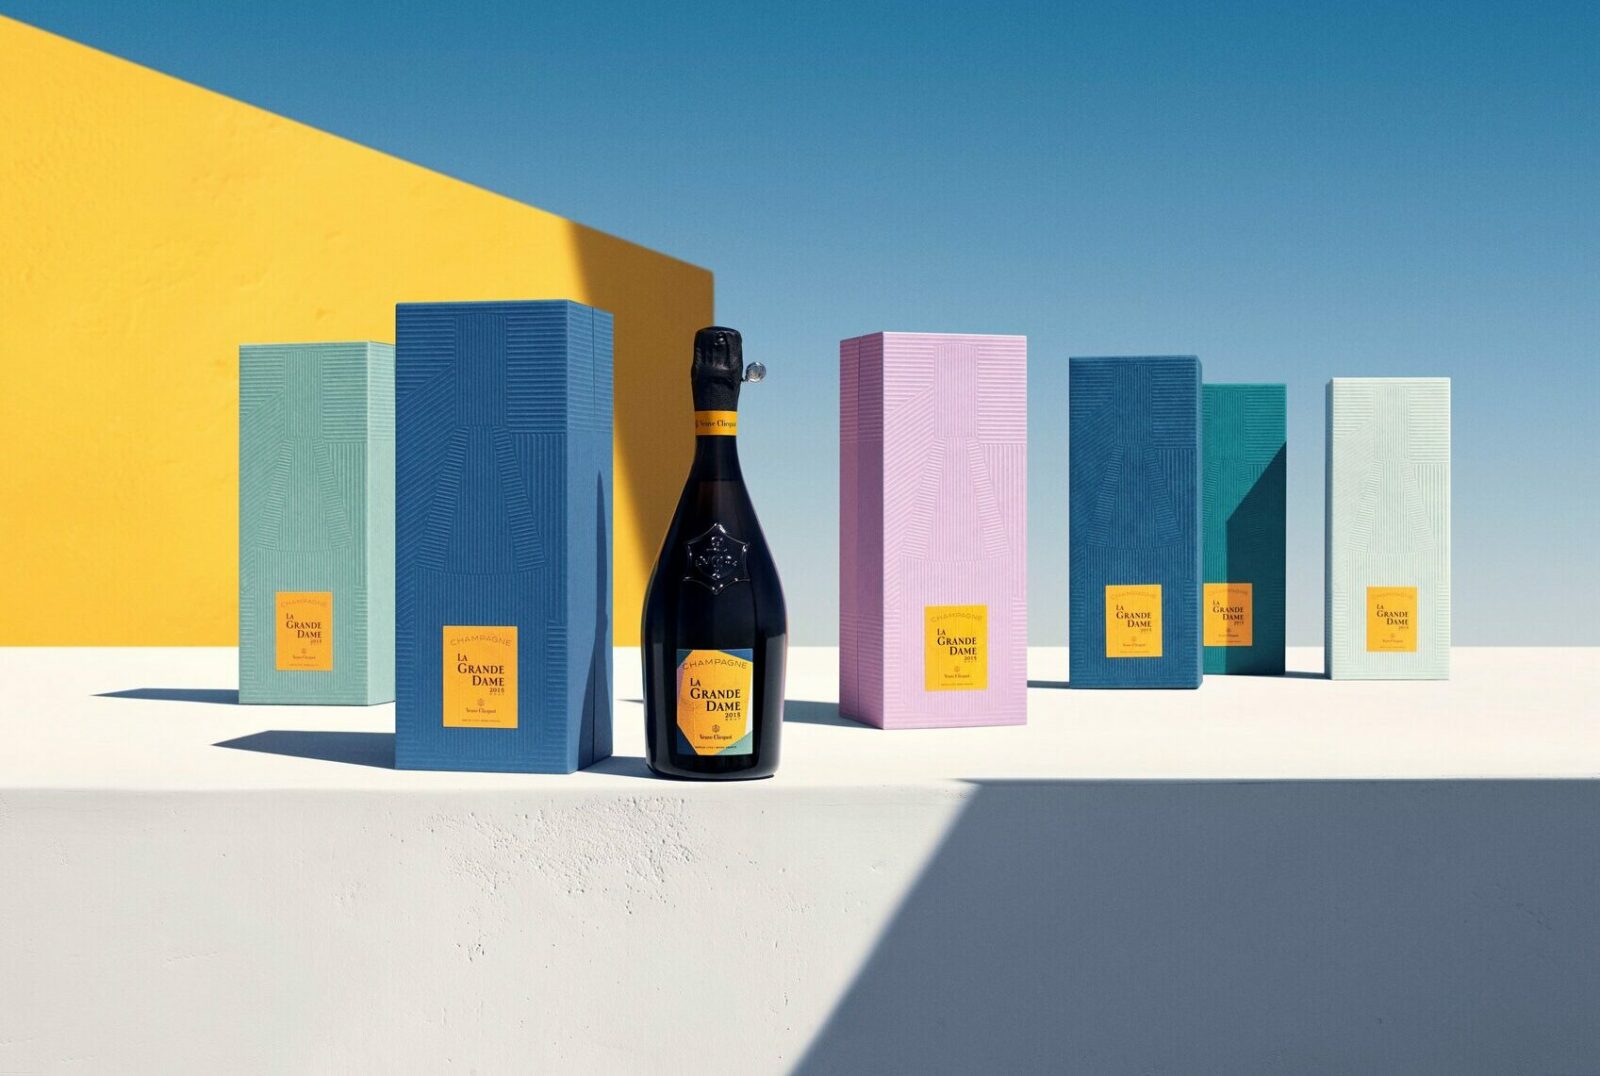 Veuve Clicquot LA Grande Dame Champagne 2015